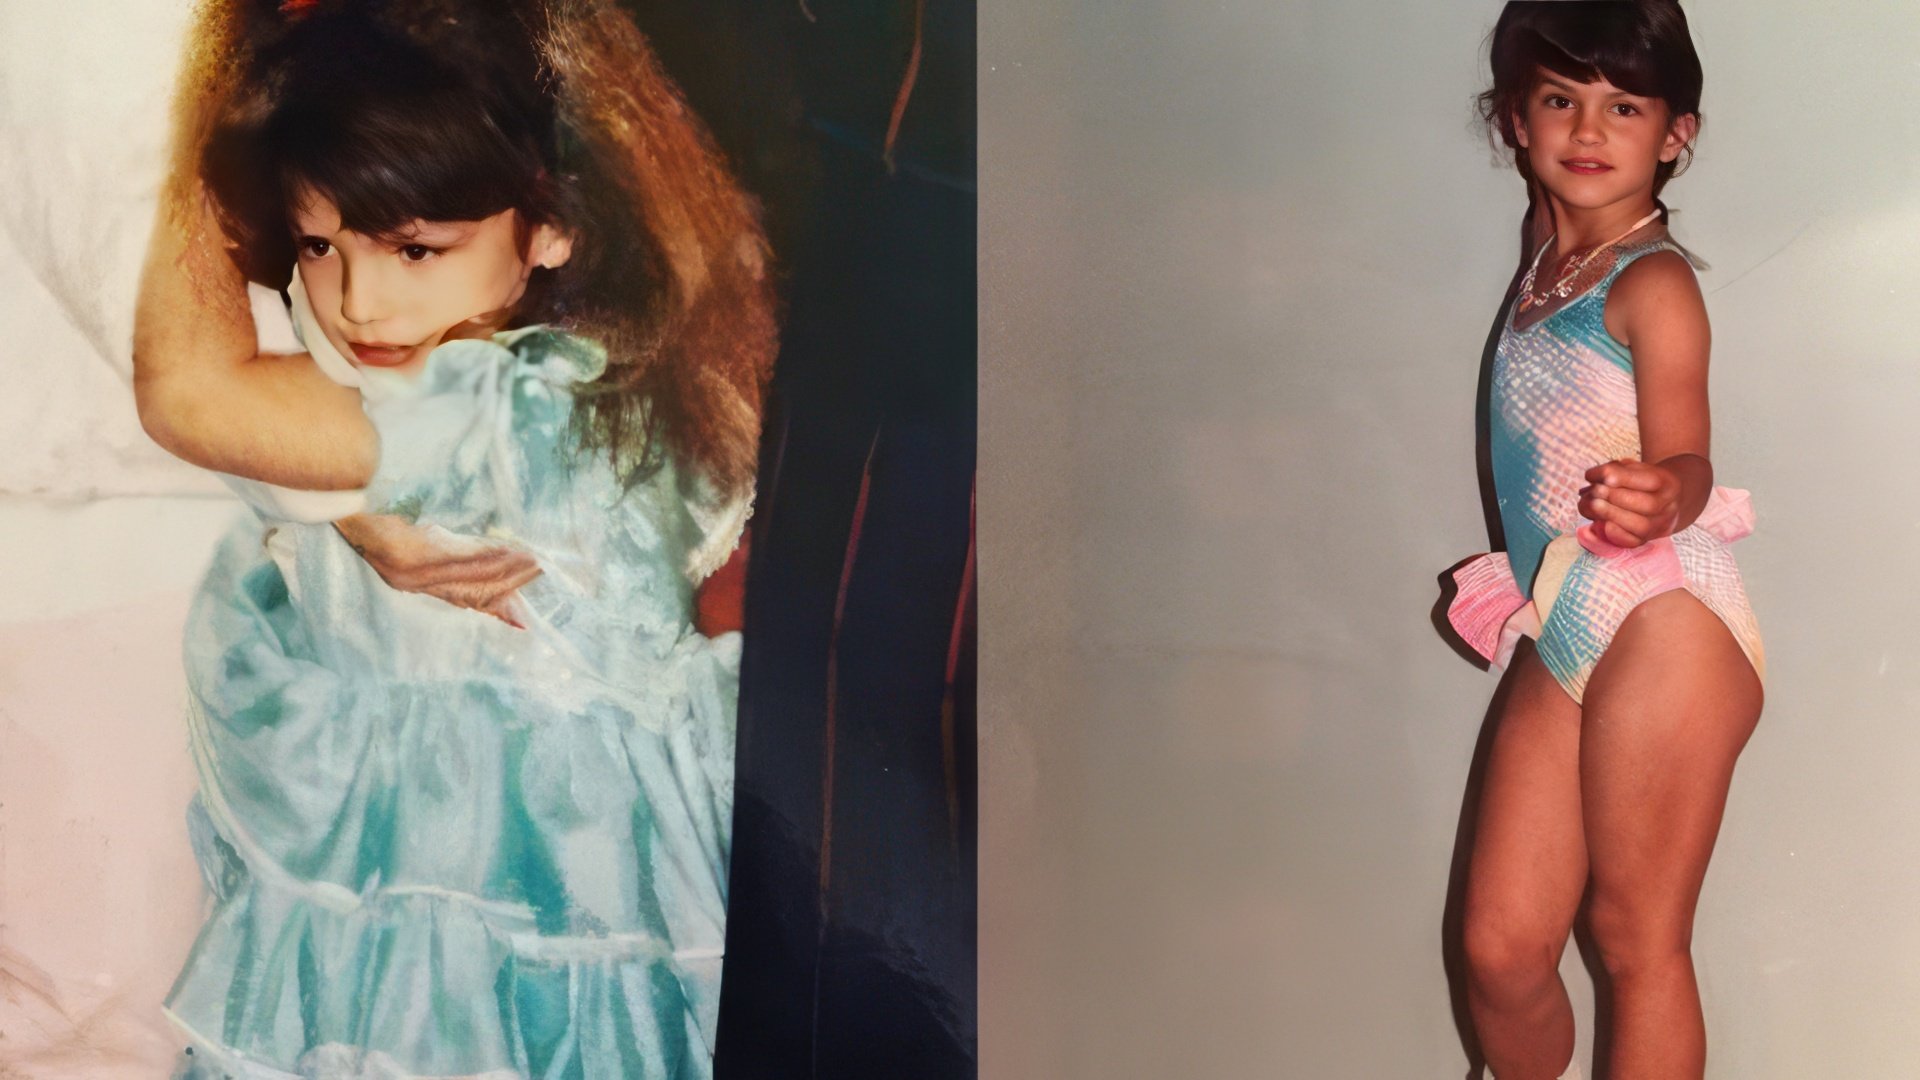 Gina Carano as a kid